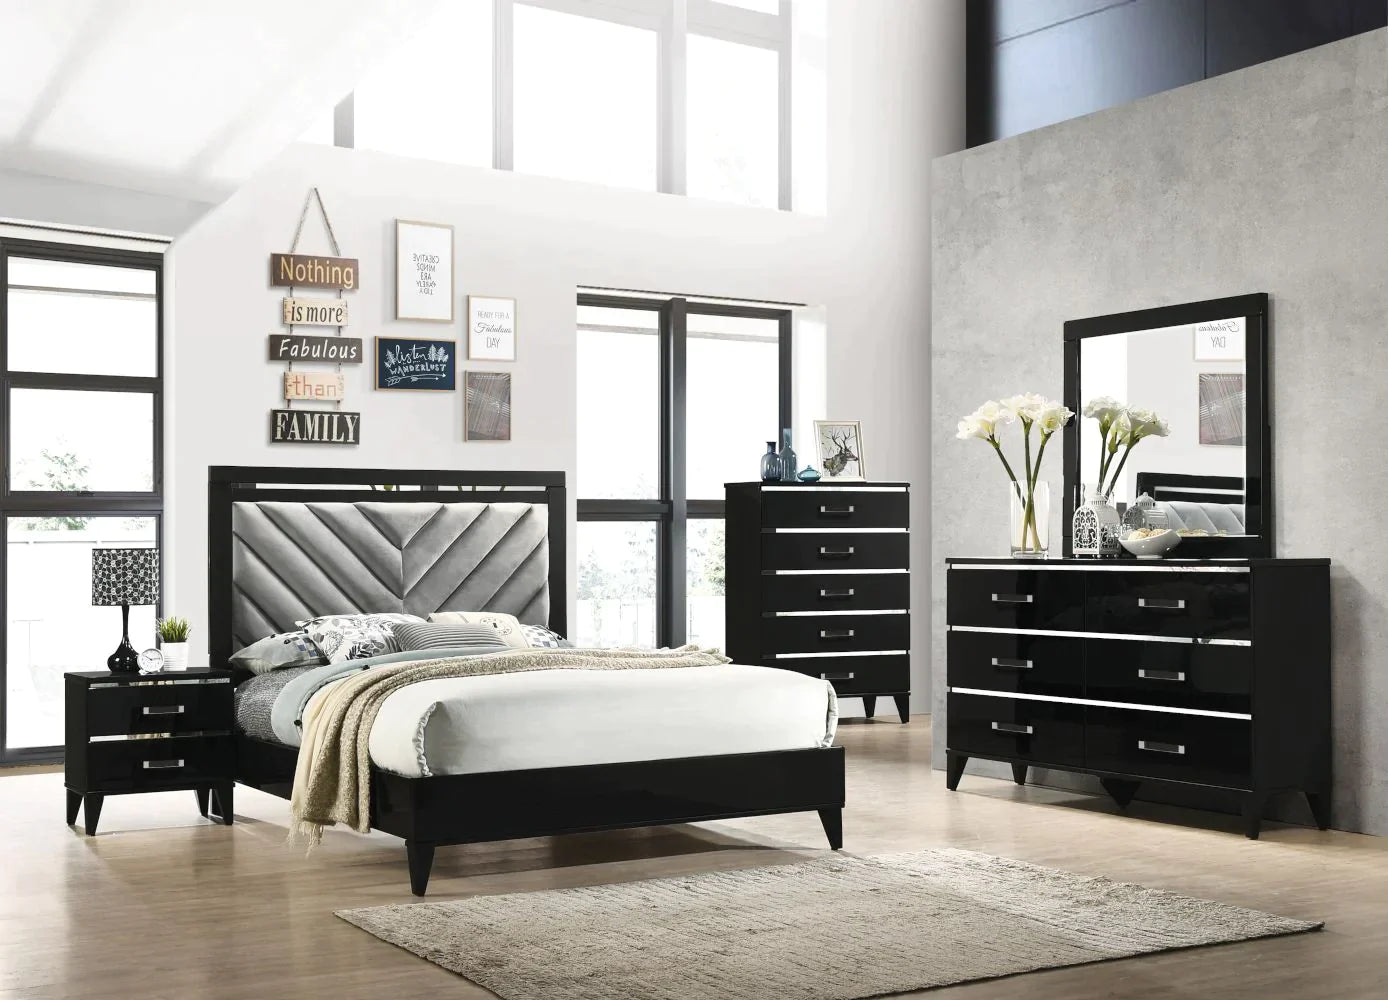 Chelsie Black Finish Dresser Model 27415 By ACME Furniture